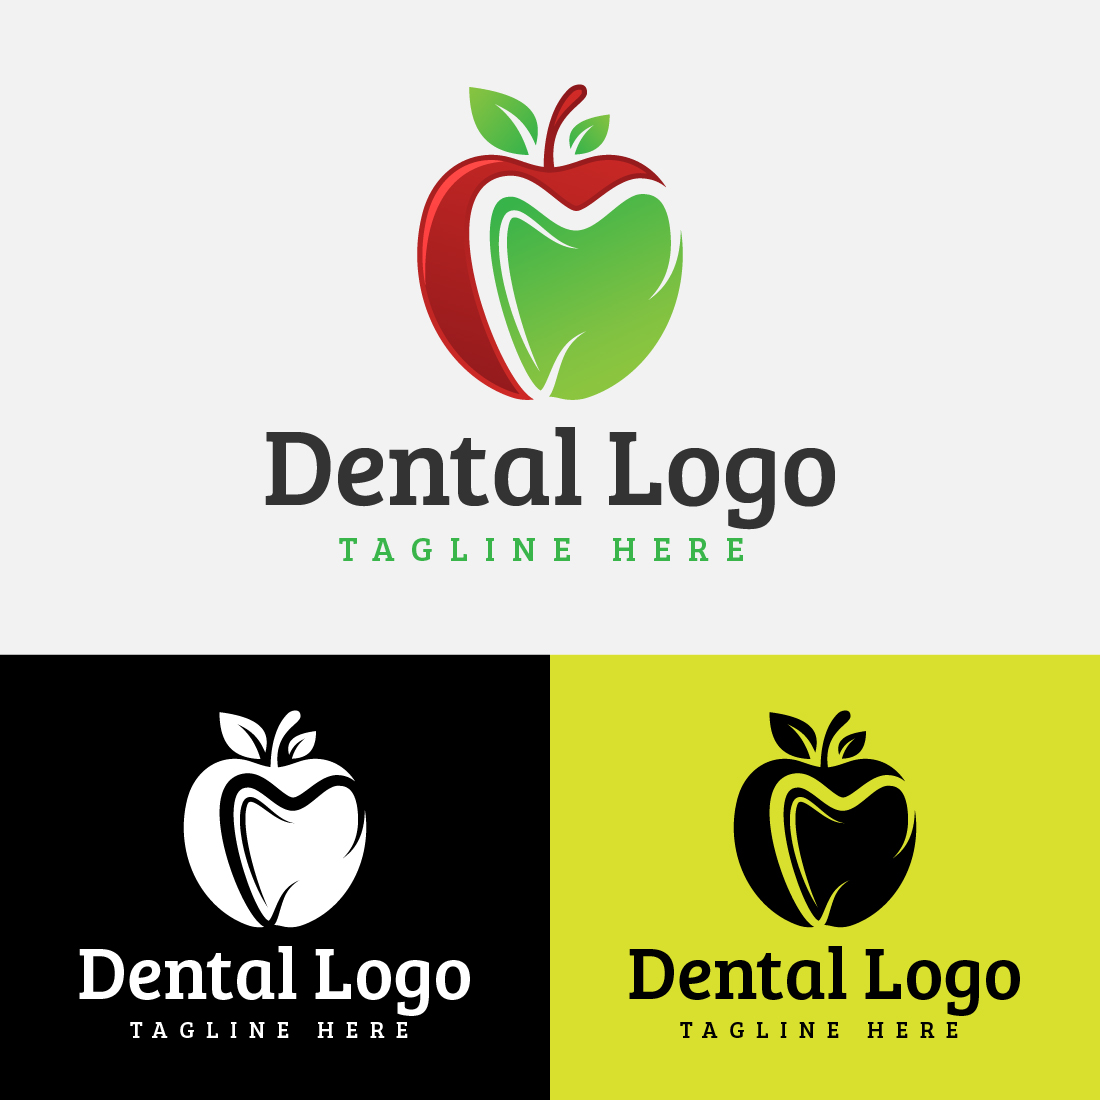 Apple Dental Logo cover image.